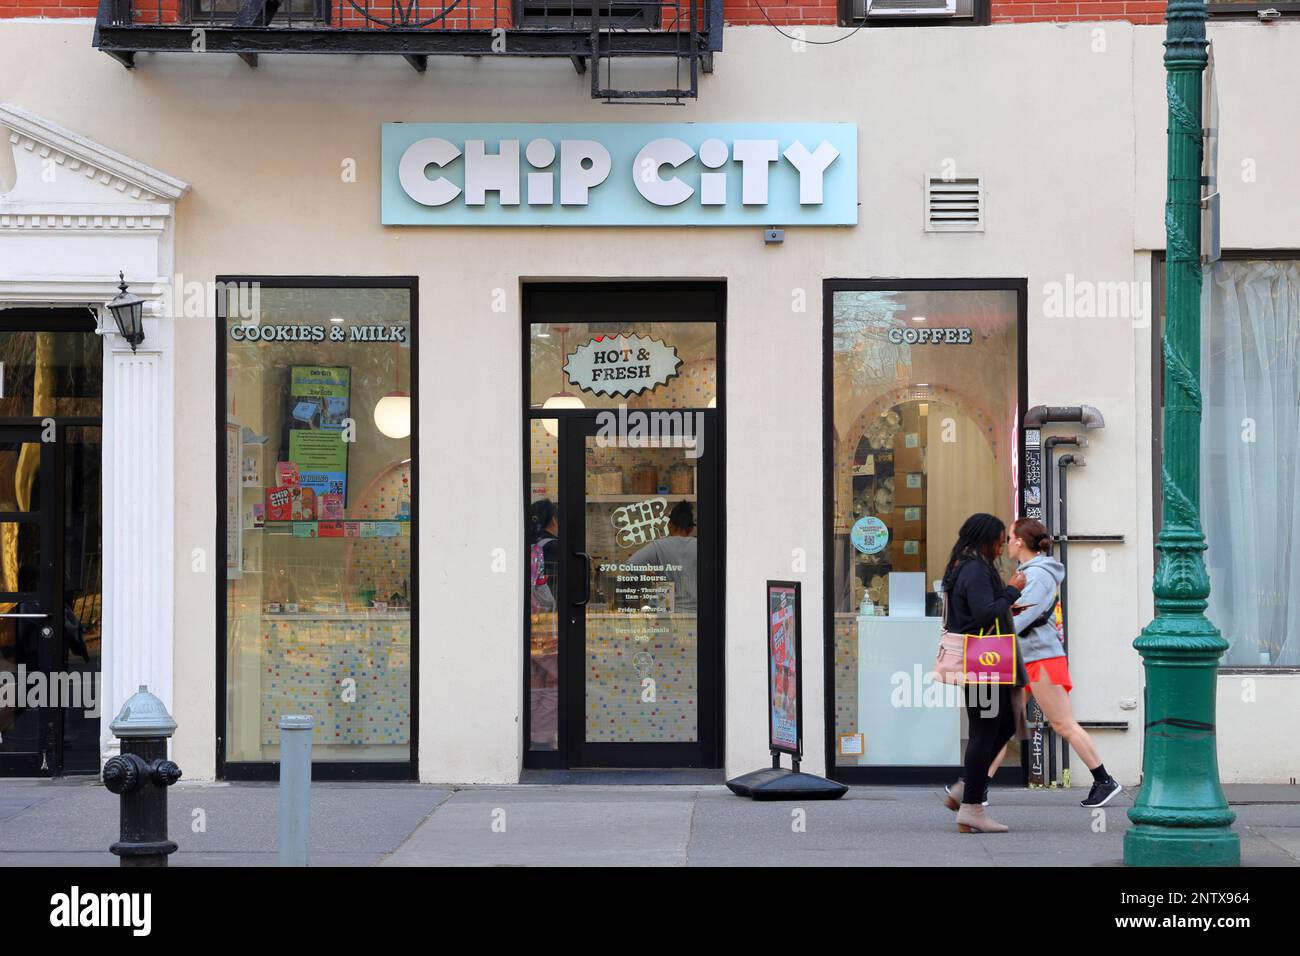 Chip City, 370 Columbus Ave, New York. Boutique NYC photo d'un magasin de biscuits dans le quartier Upper West Side de Manhattan. Banque D'Images